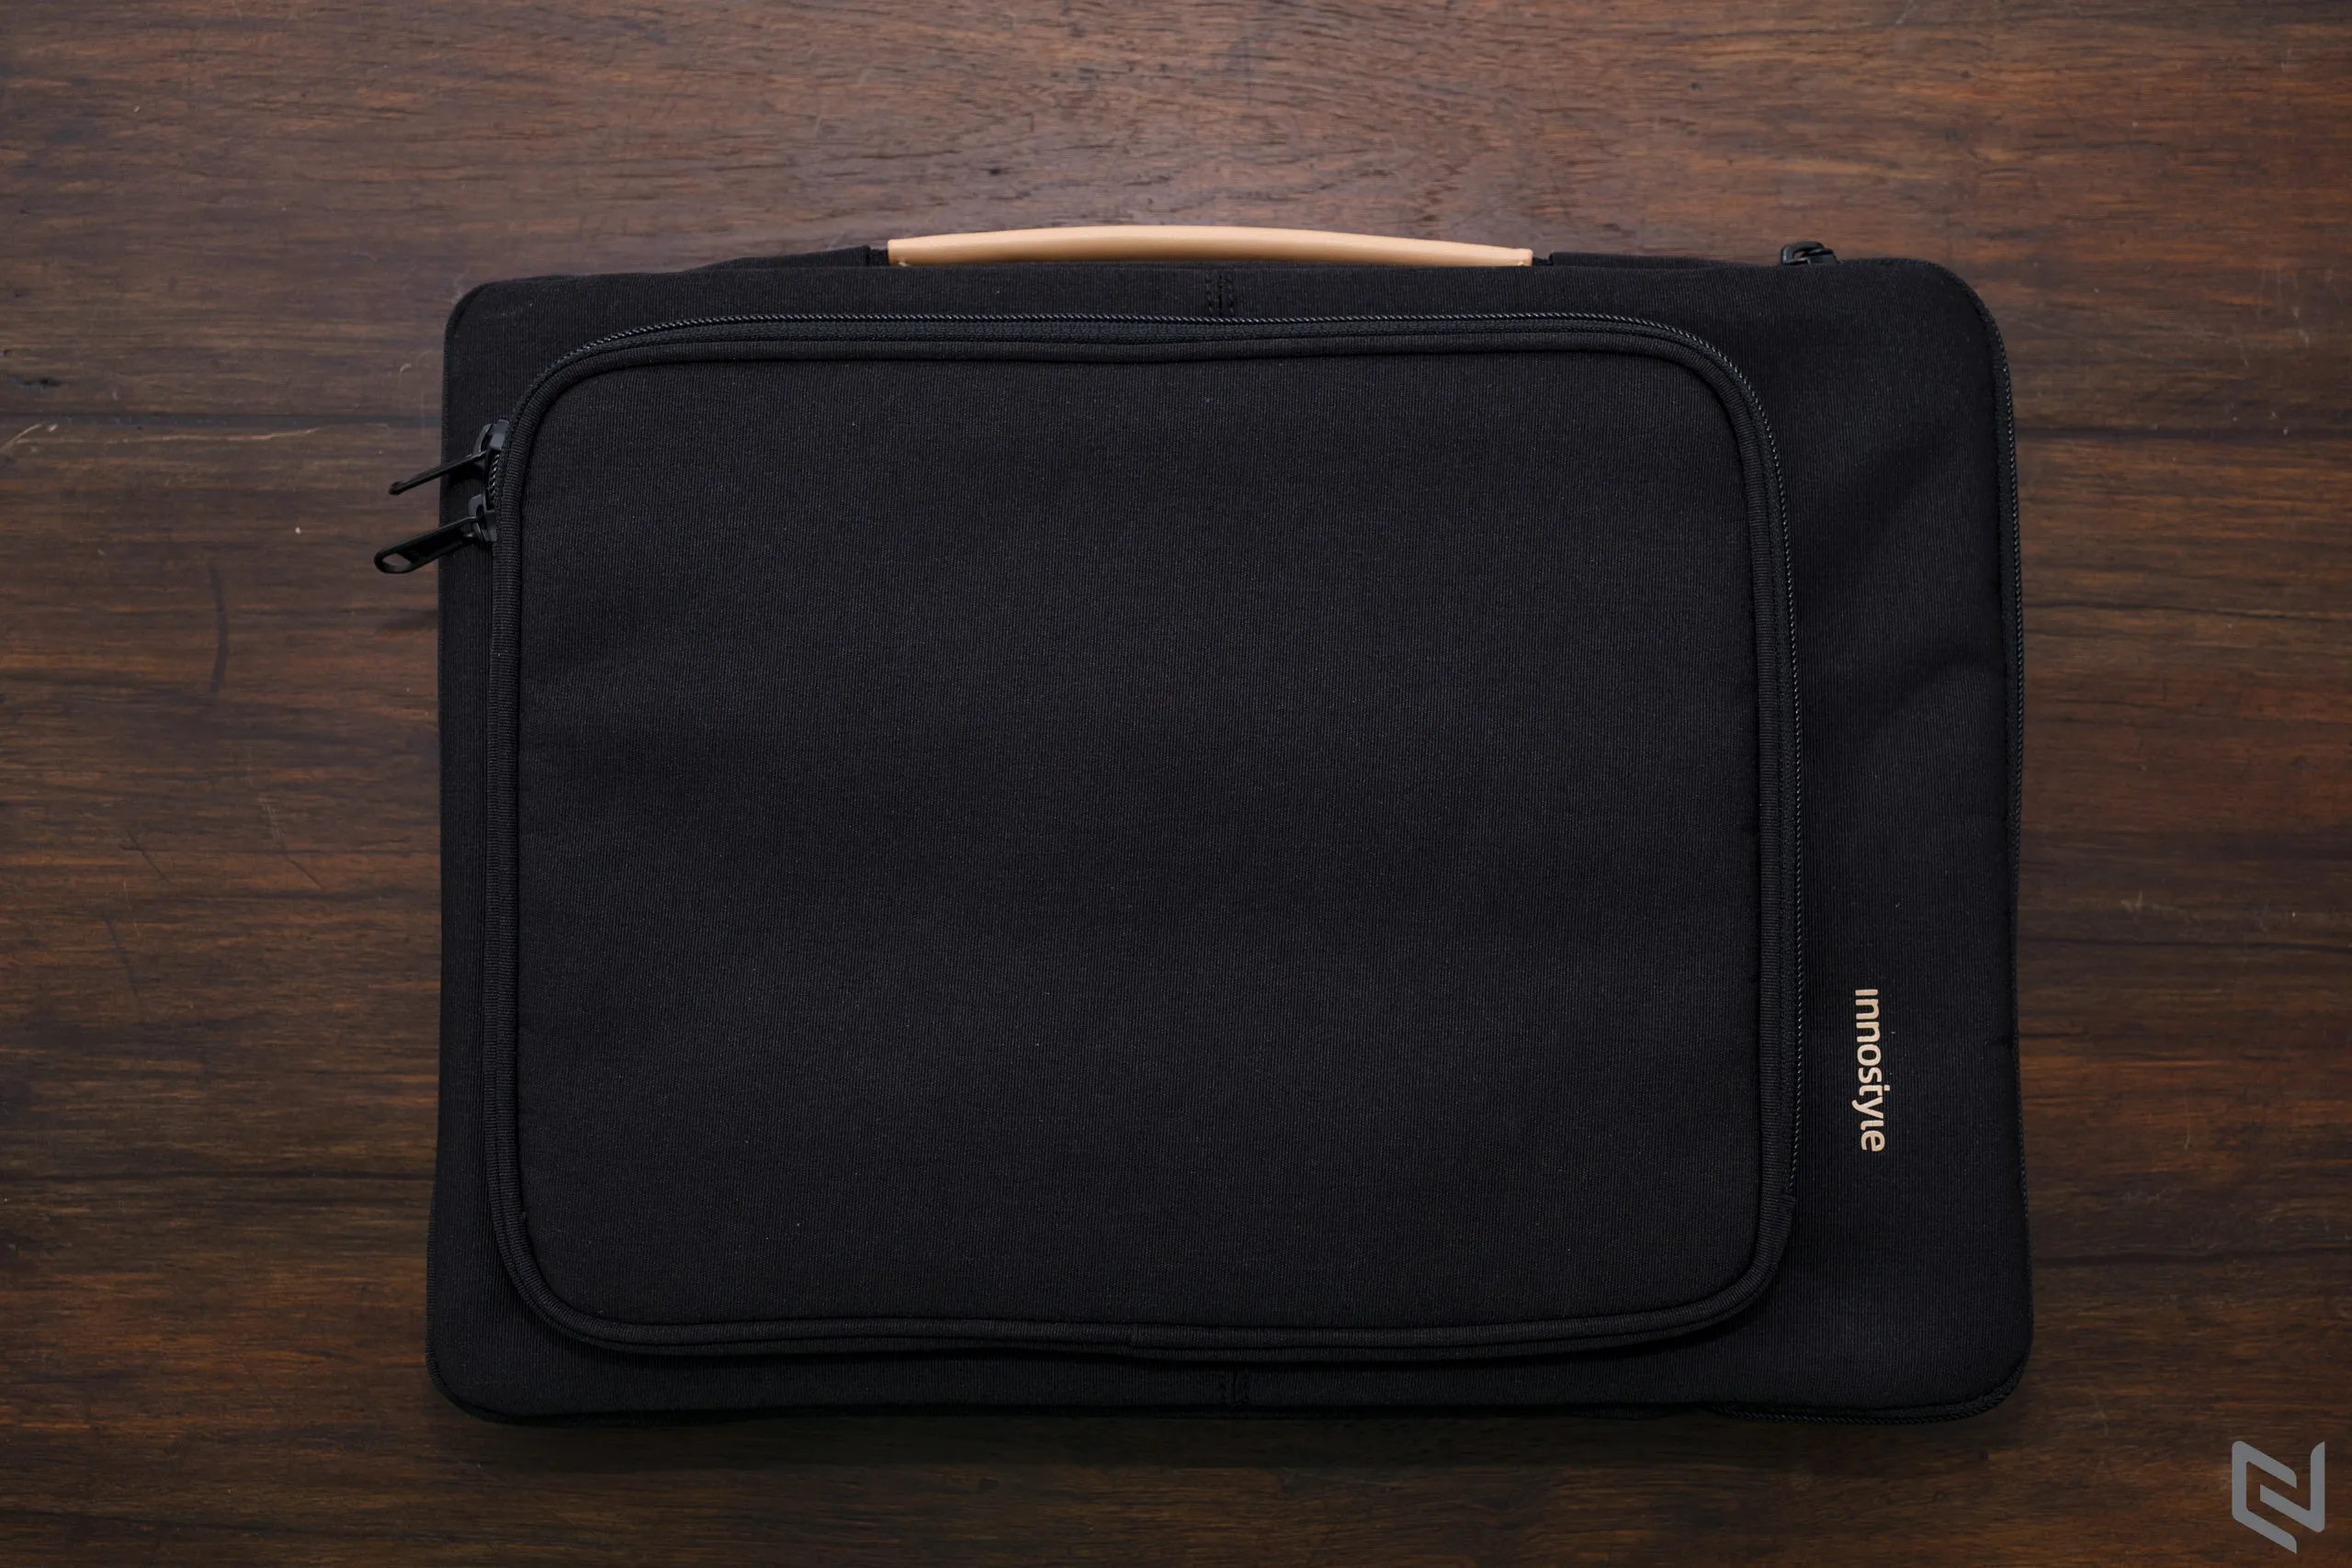 Trên tay túi chống sốc Innostyle OmniProtect Carrying Sleeve: 3 lớp, vải chống nước, có ngăn phụ linh hoạt